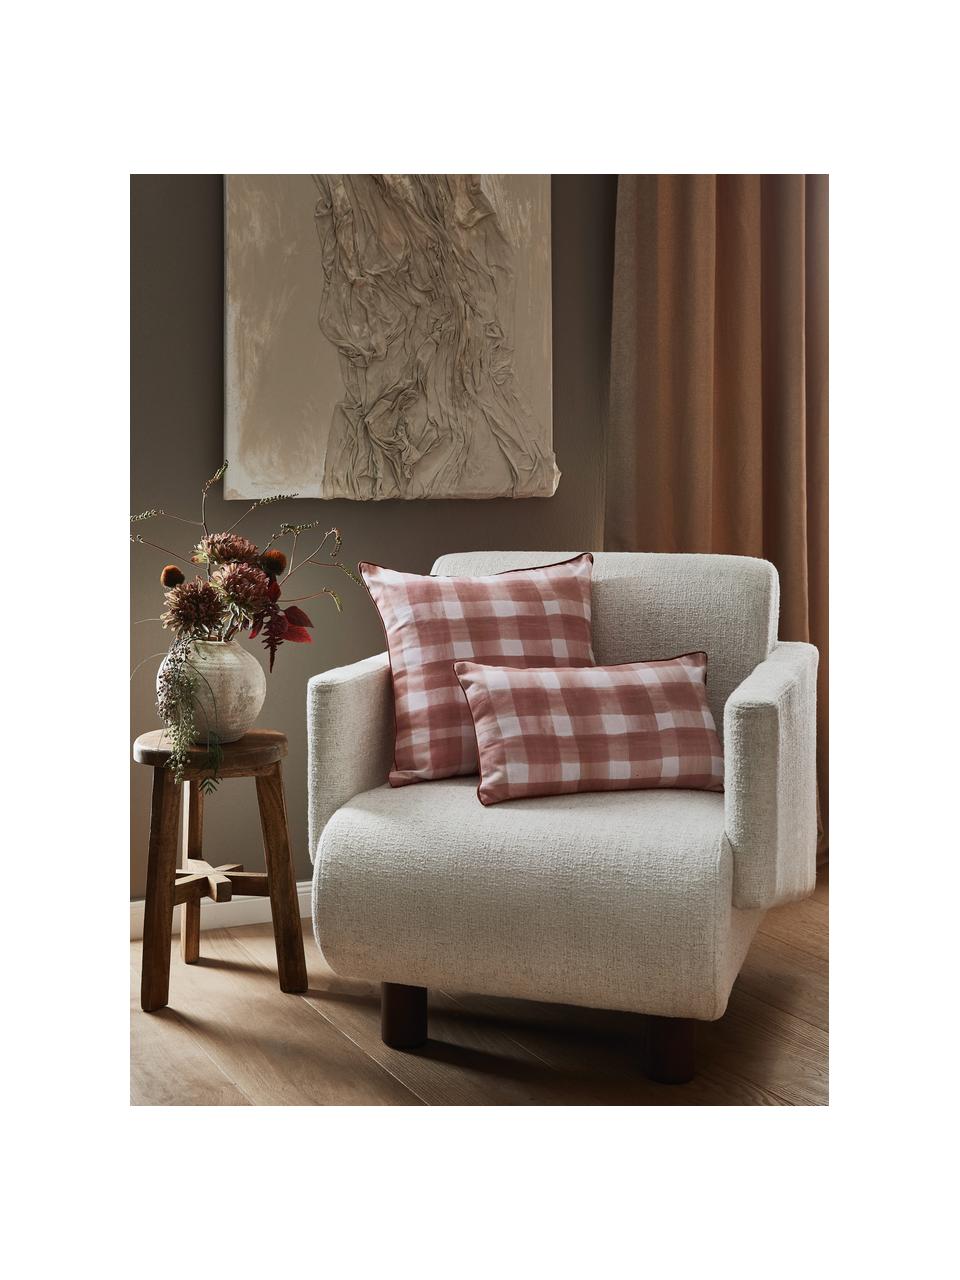 Dwustronna poszewka na poduszkę Check od Candice Gray, 100% bawełna, certyfikat GOTS, Brudny różowy, biały, S 50 x D 50 cm